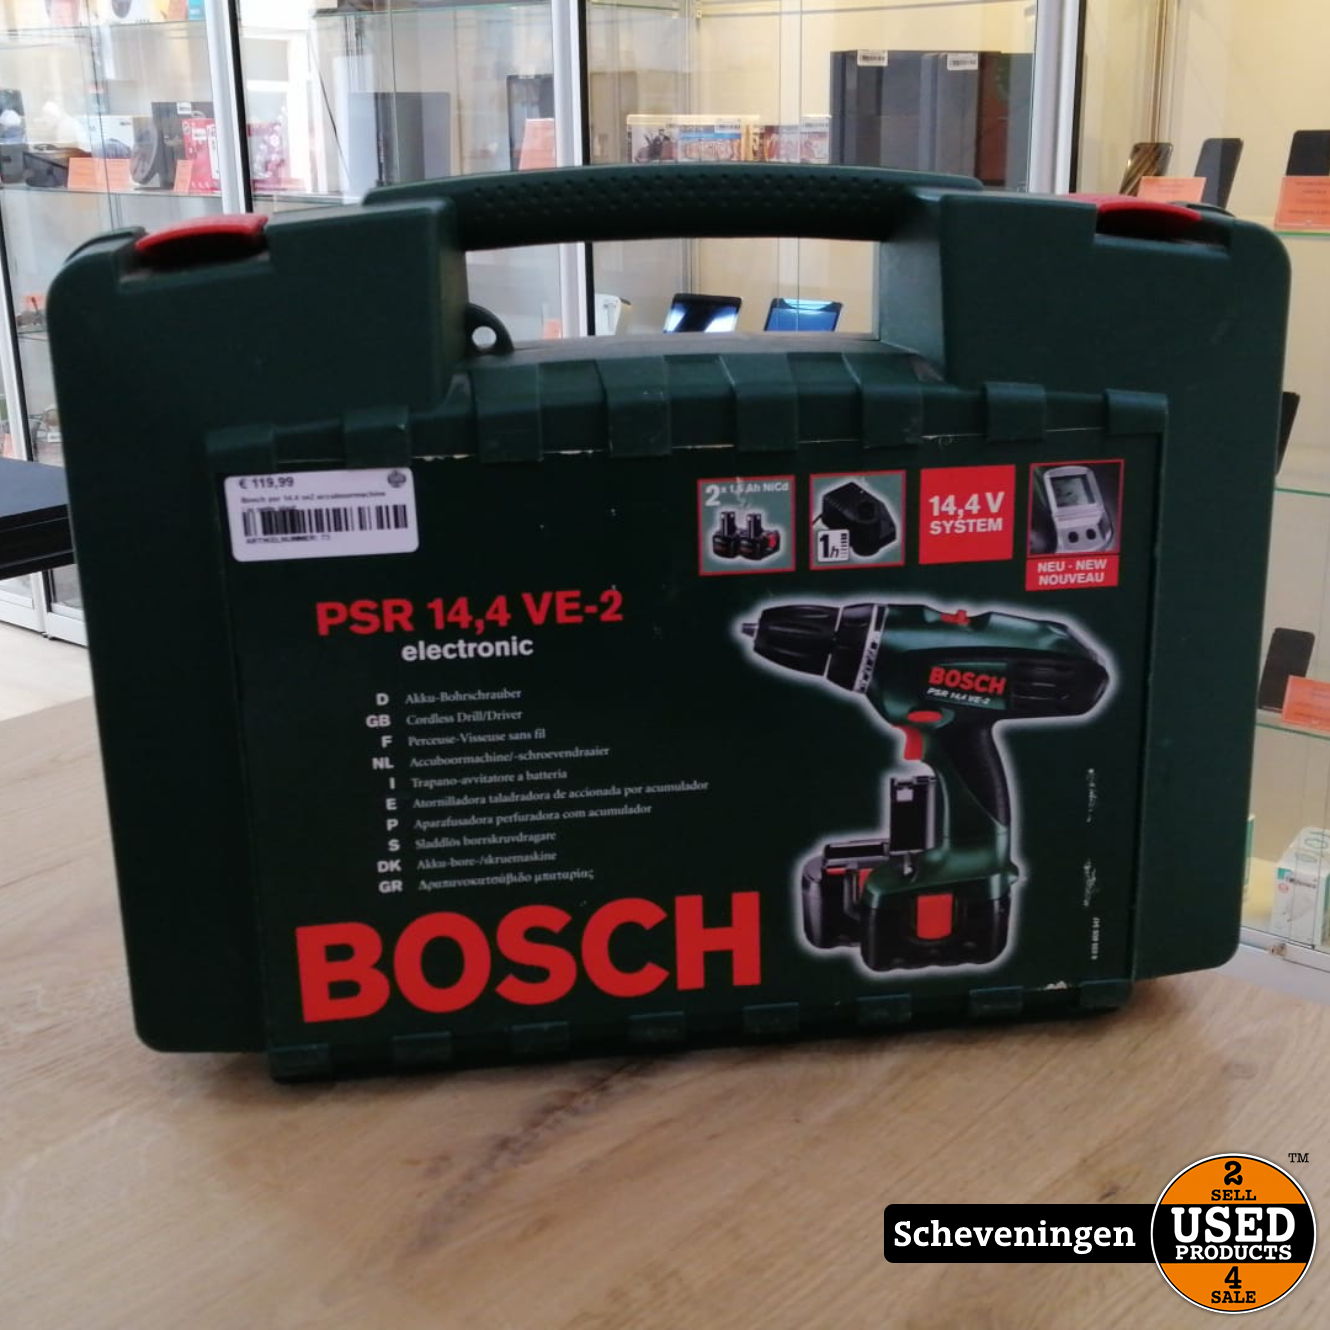 Perceptueel Vijftig taal Bosch PSR 14.4 VE2 Accuboormachine | in nette staat - Used Products  Scheveningen